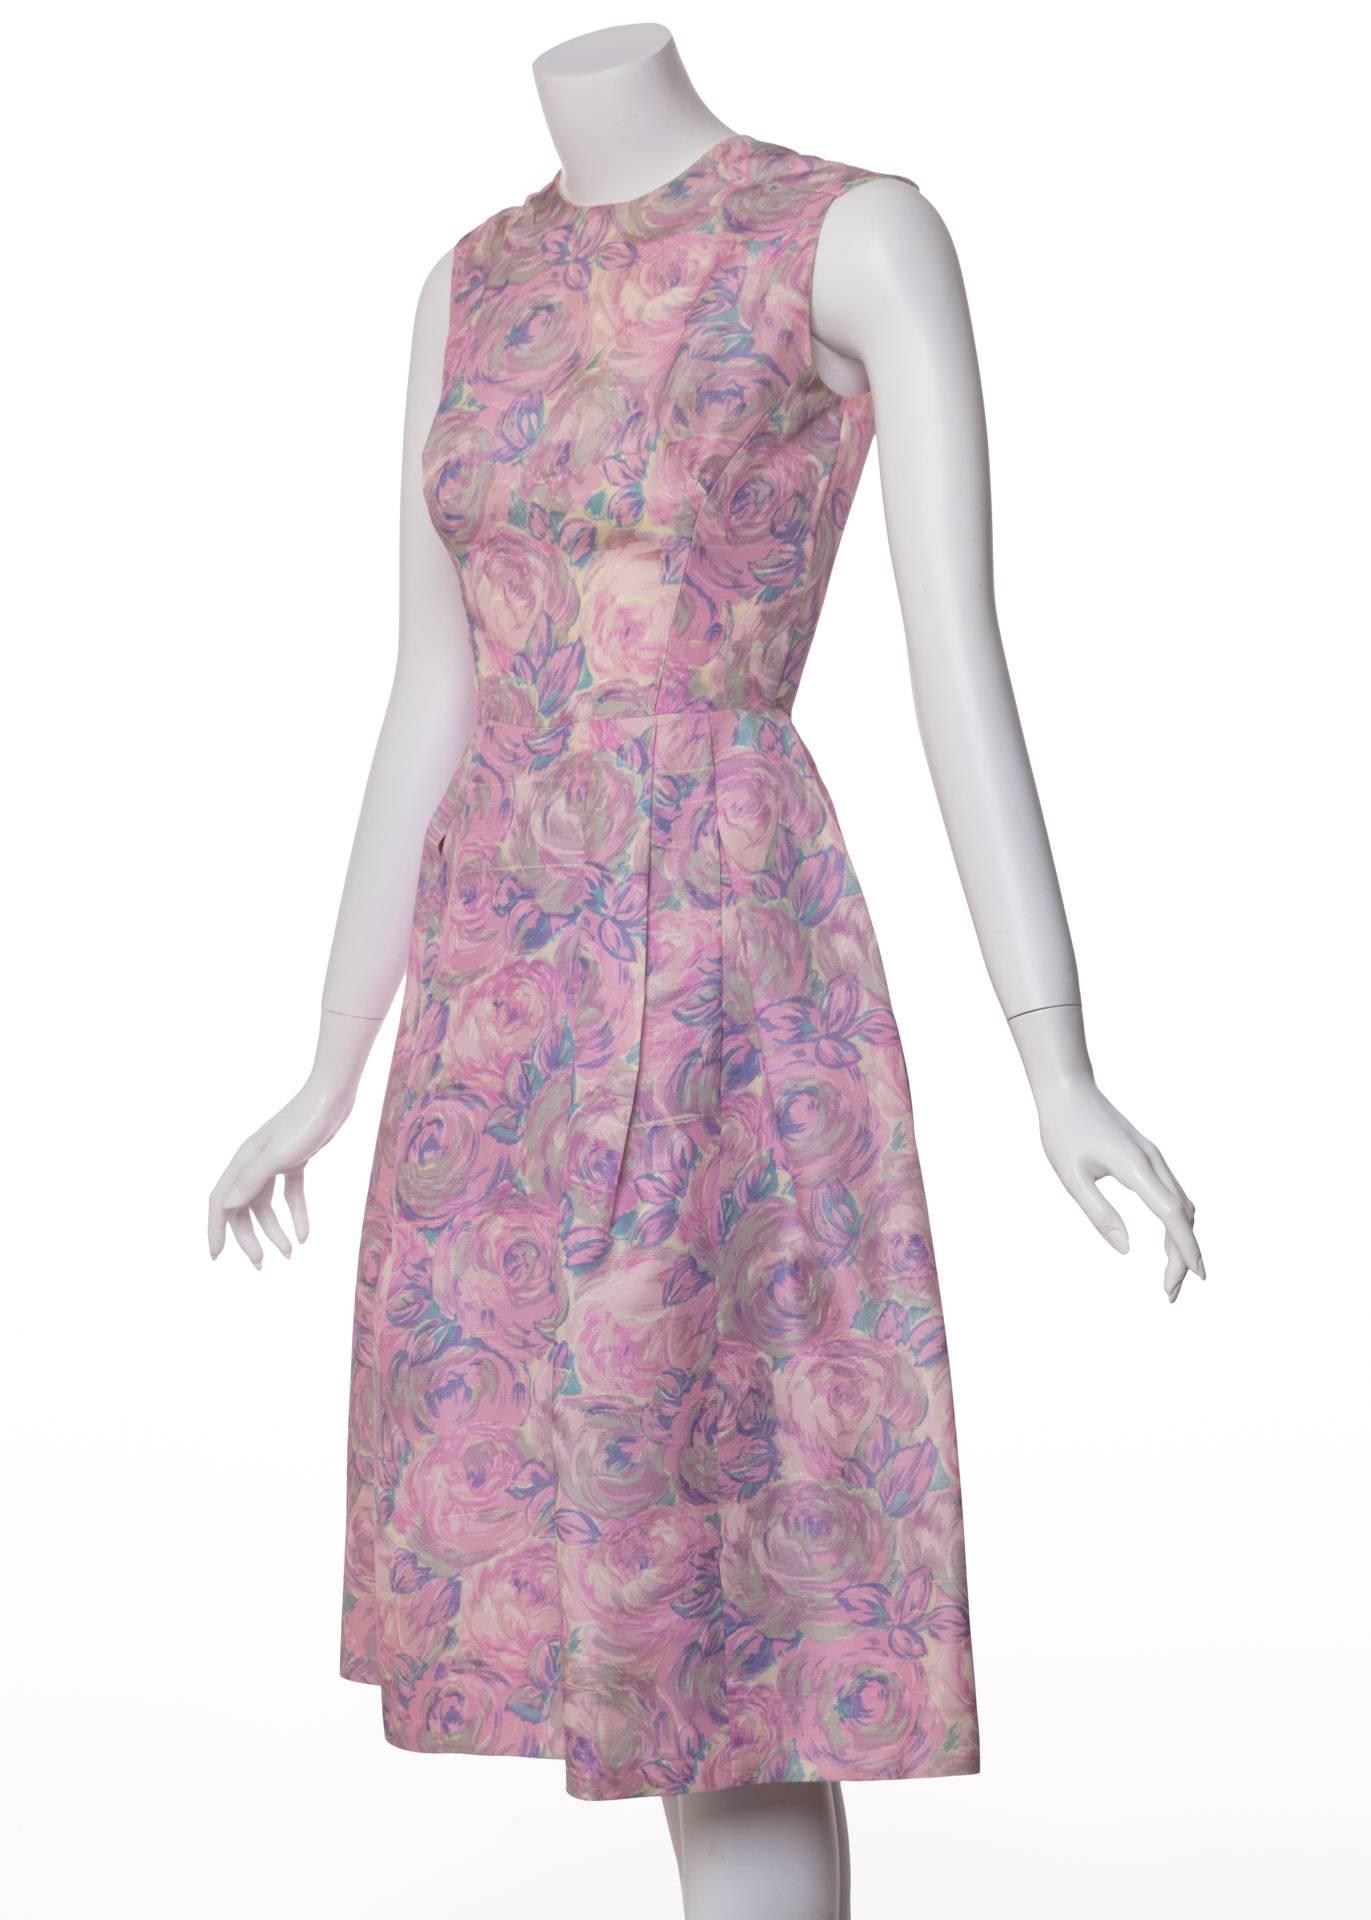 Gris 1950, Hattie Carnegie, robe à taille nouée en soie à imprimé floral et aquarelle en vente